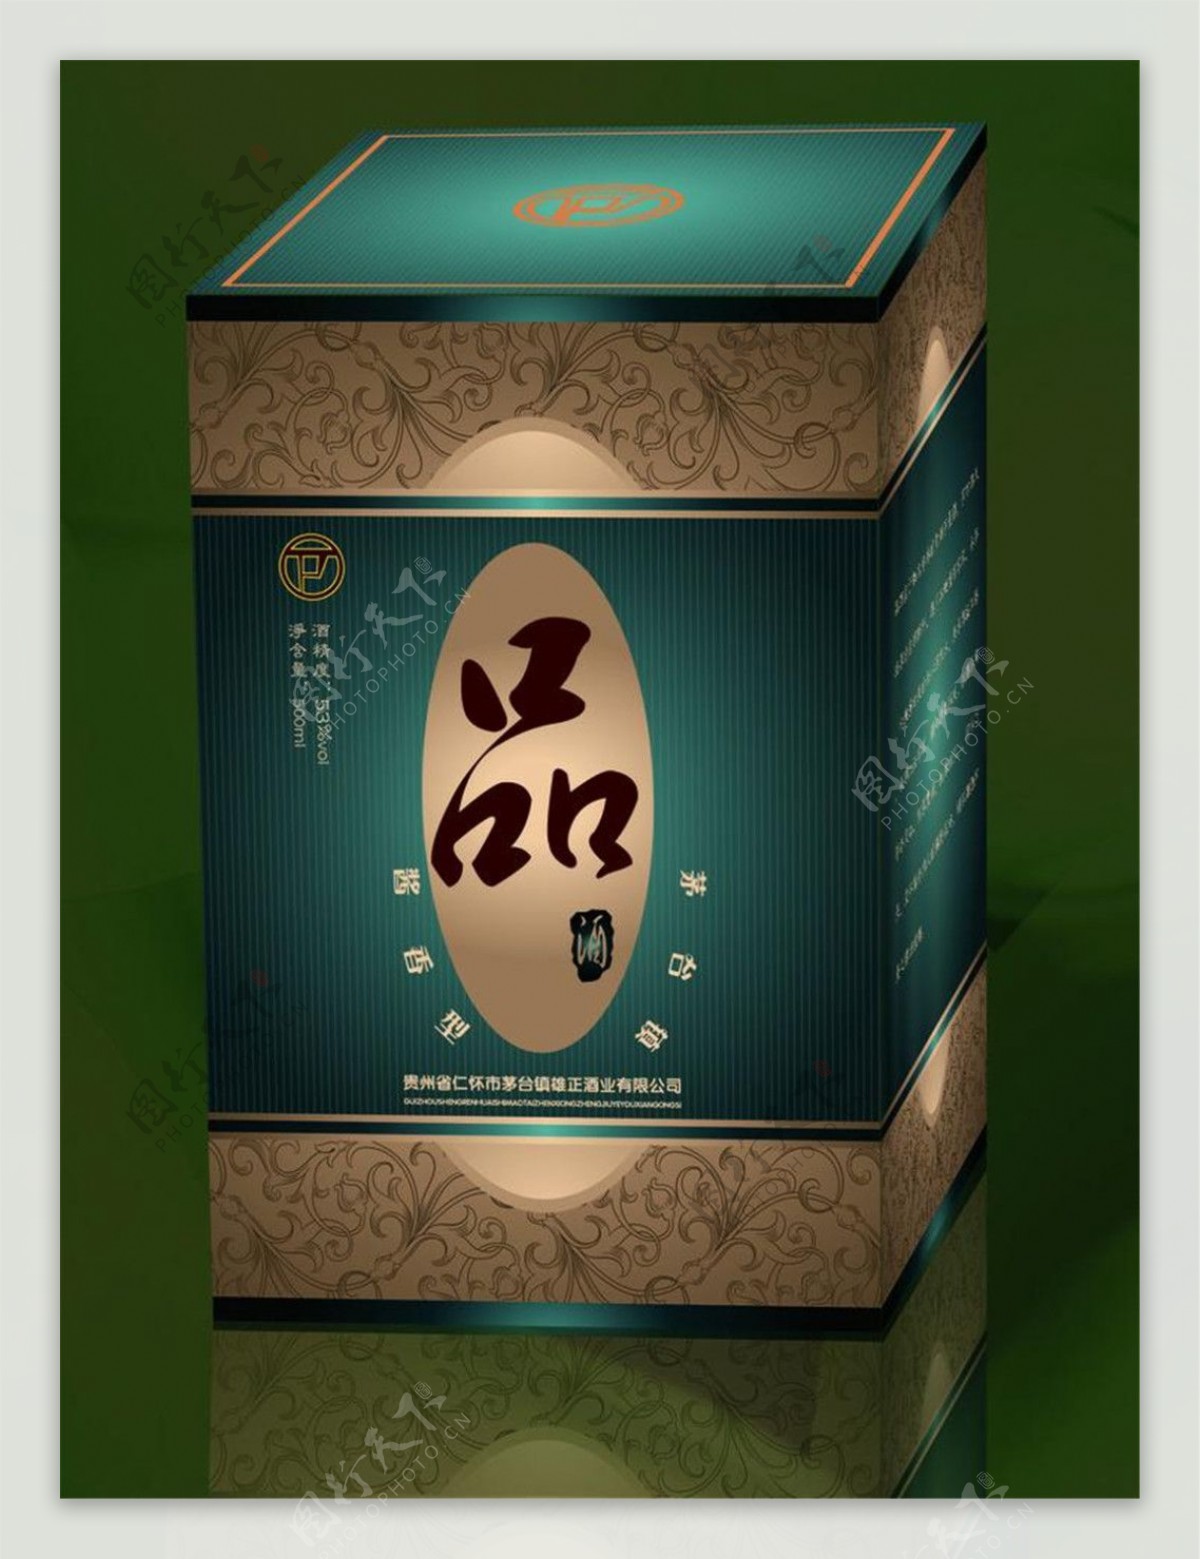 品酒包装图片模板下载盒设计食品包装酒包装包装设计广告设计矢量eps